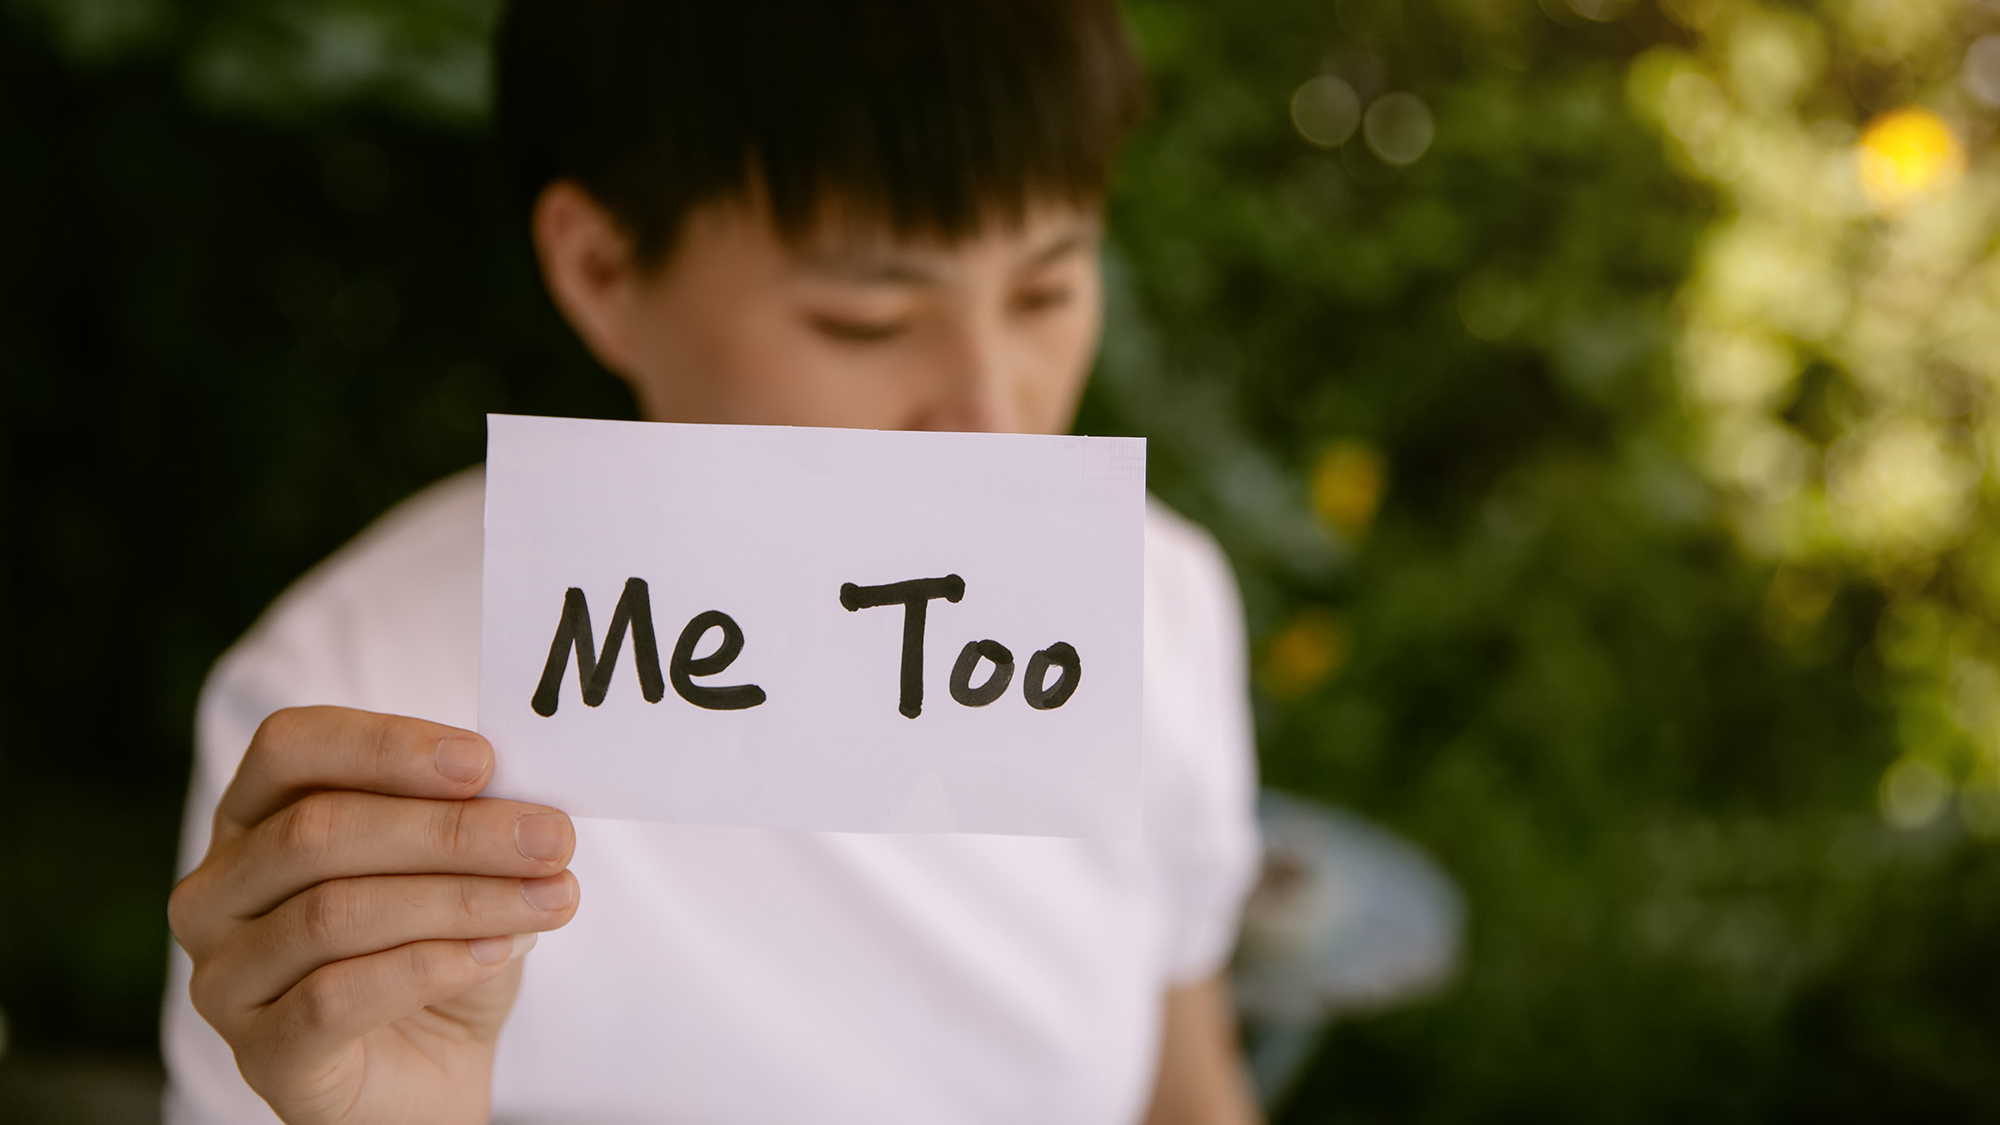 Junge hält Schild hoch mit Aufschrift "Me too"